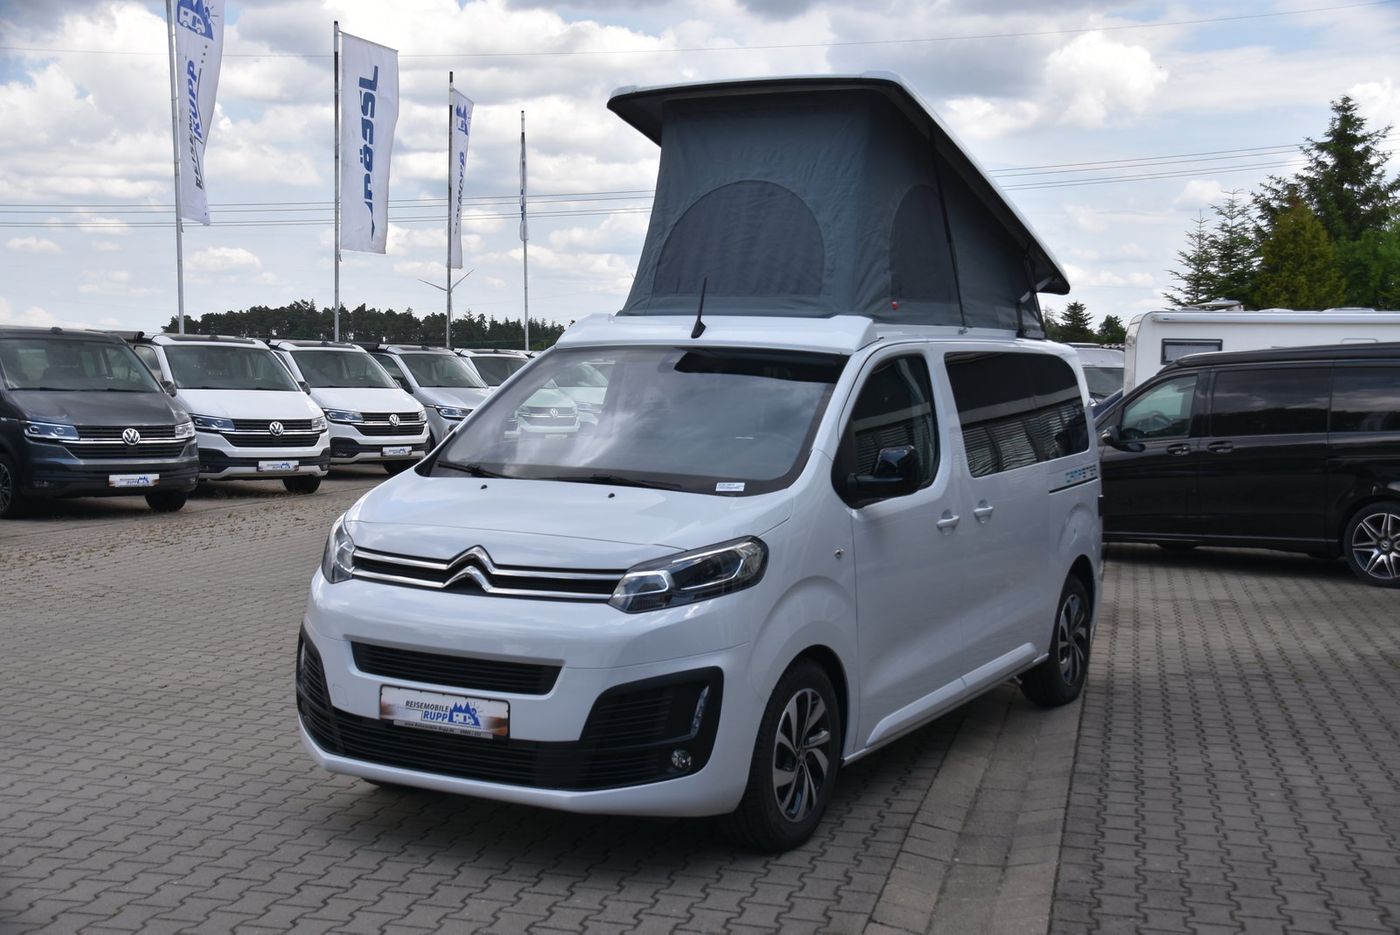 Pössl Citroën Campster INKLUSIVE Zubehör Garantie in Baden